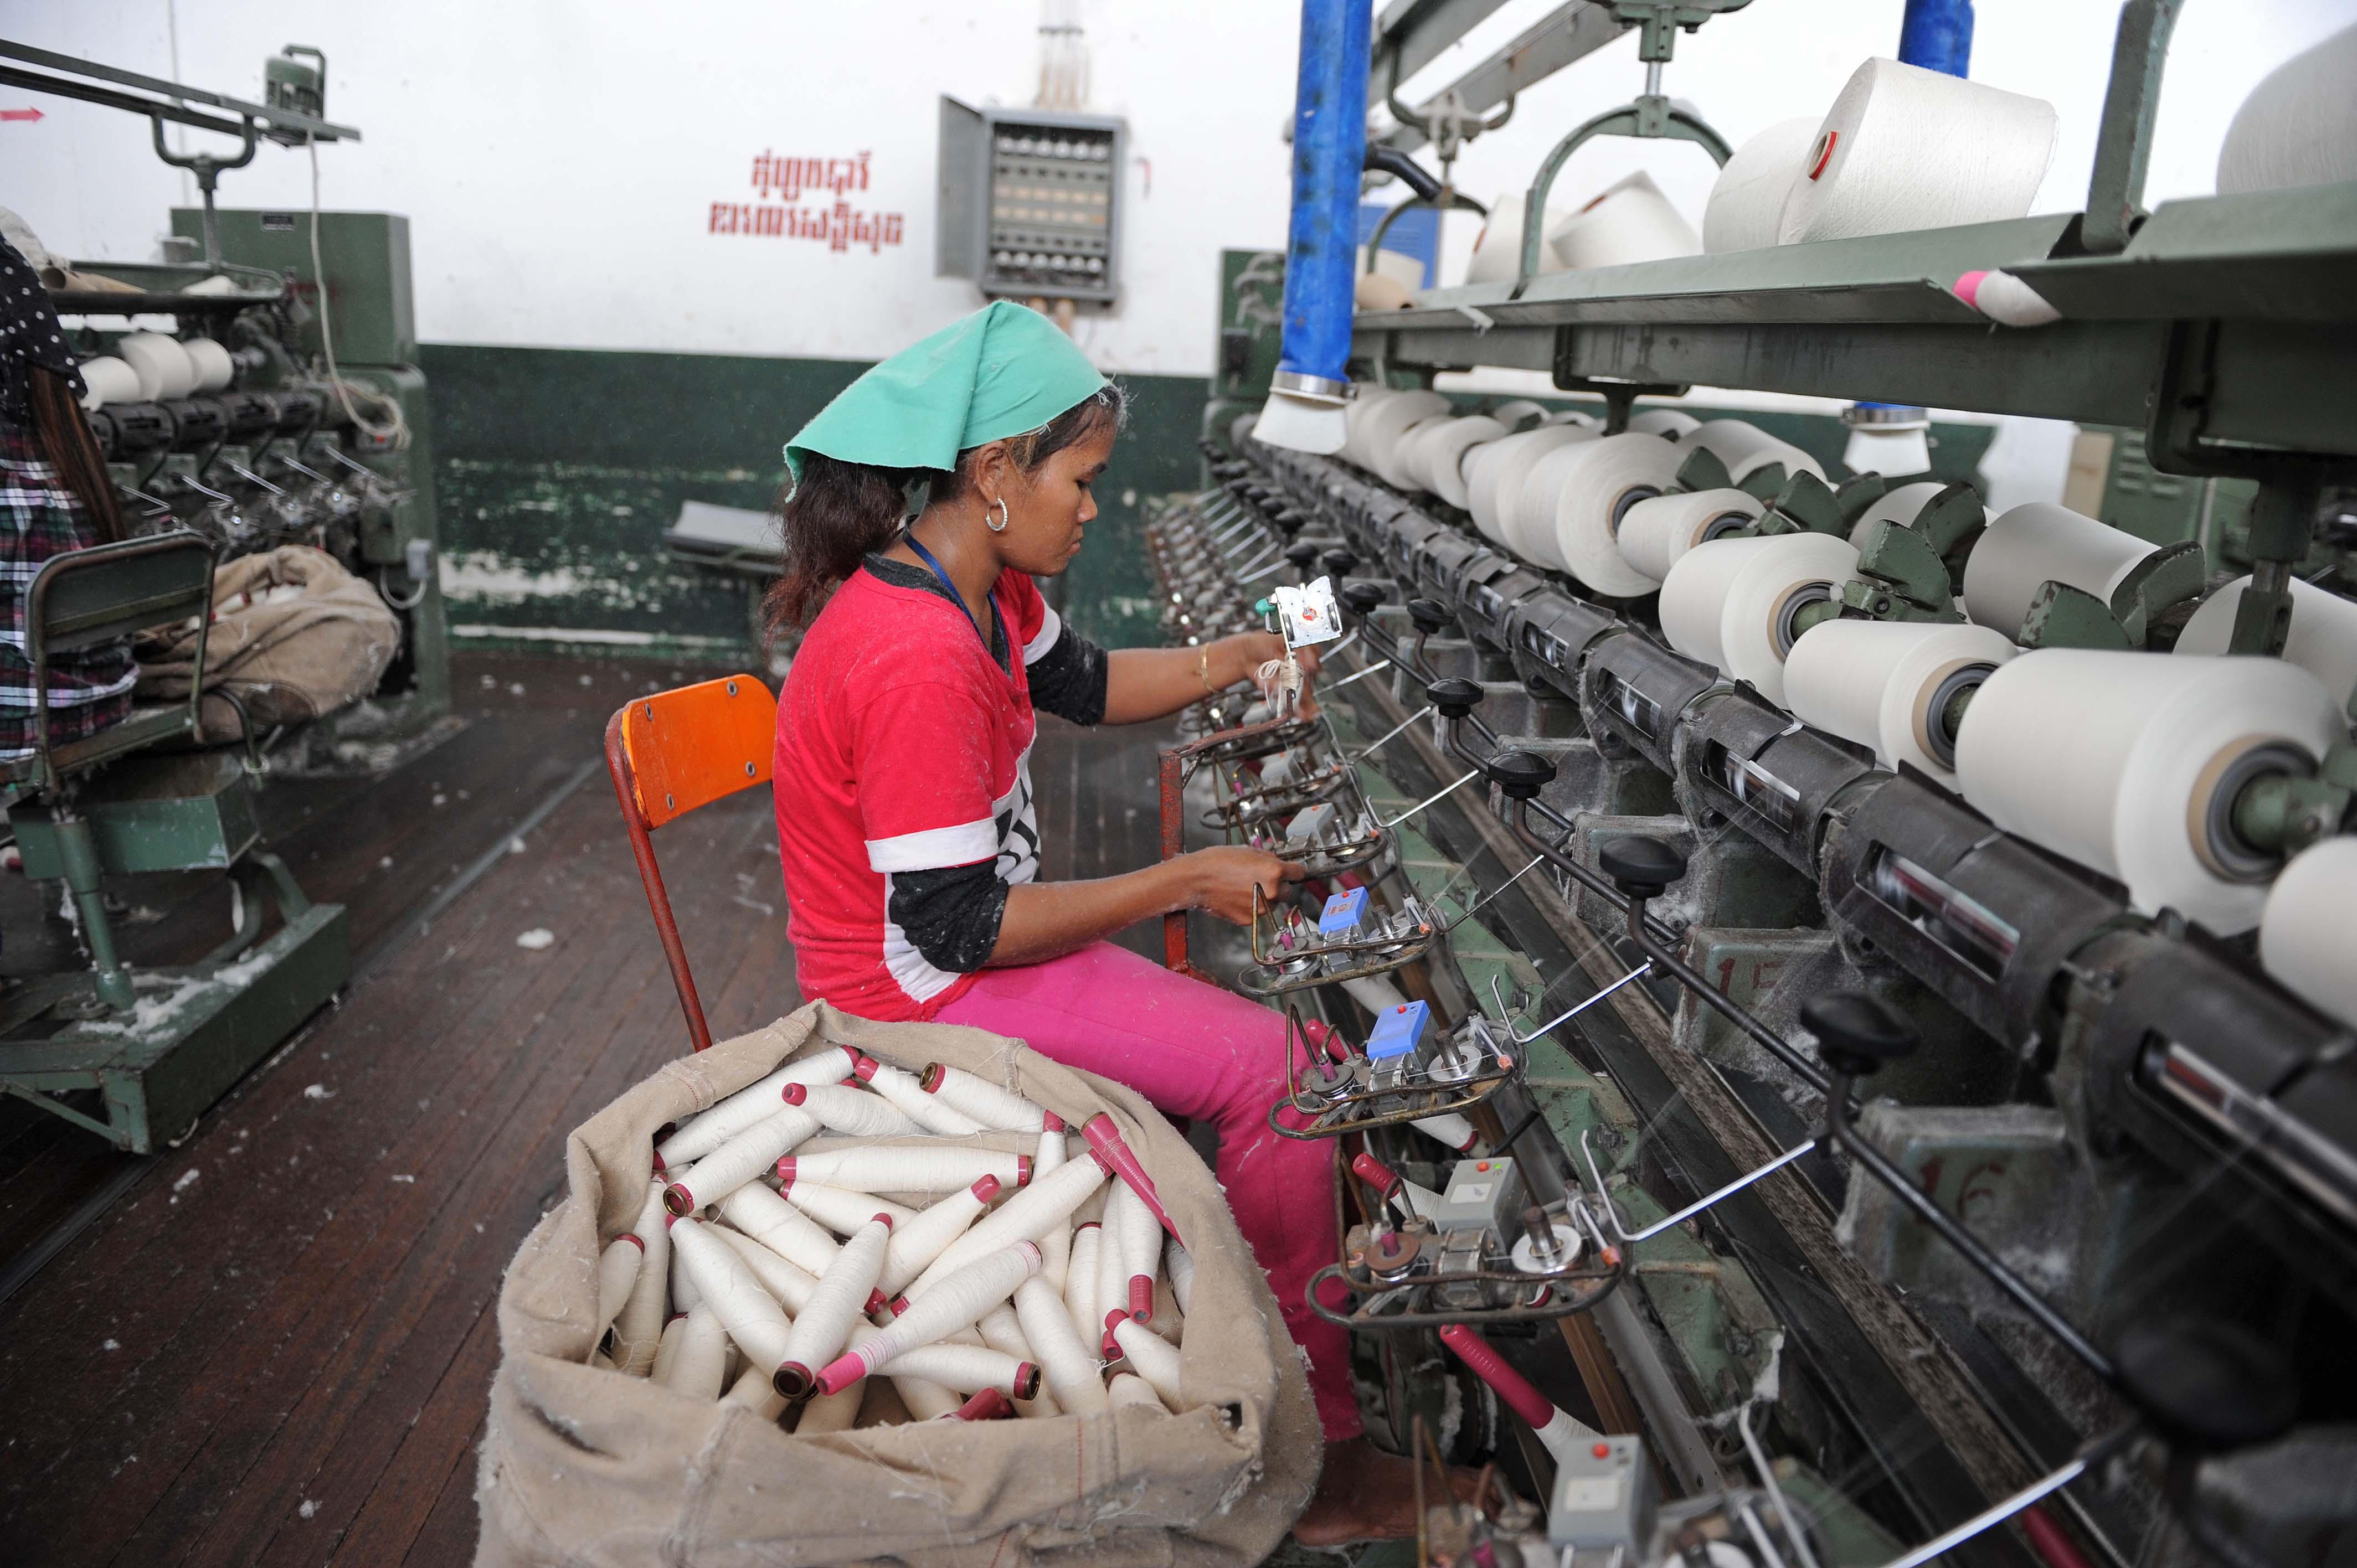 柬埔寨血汗工厂 年轻妹子做苦工 - 社会 - 东方网